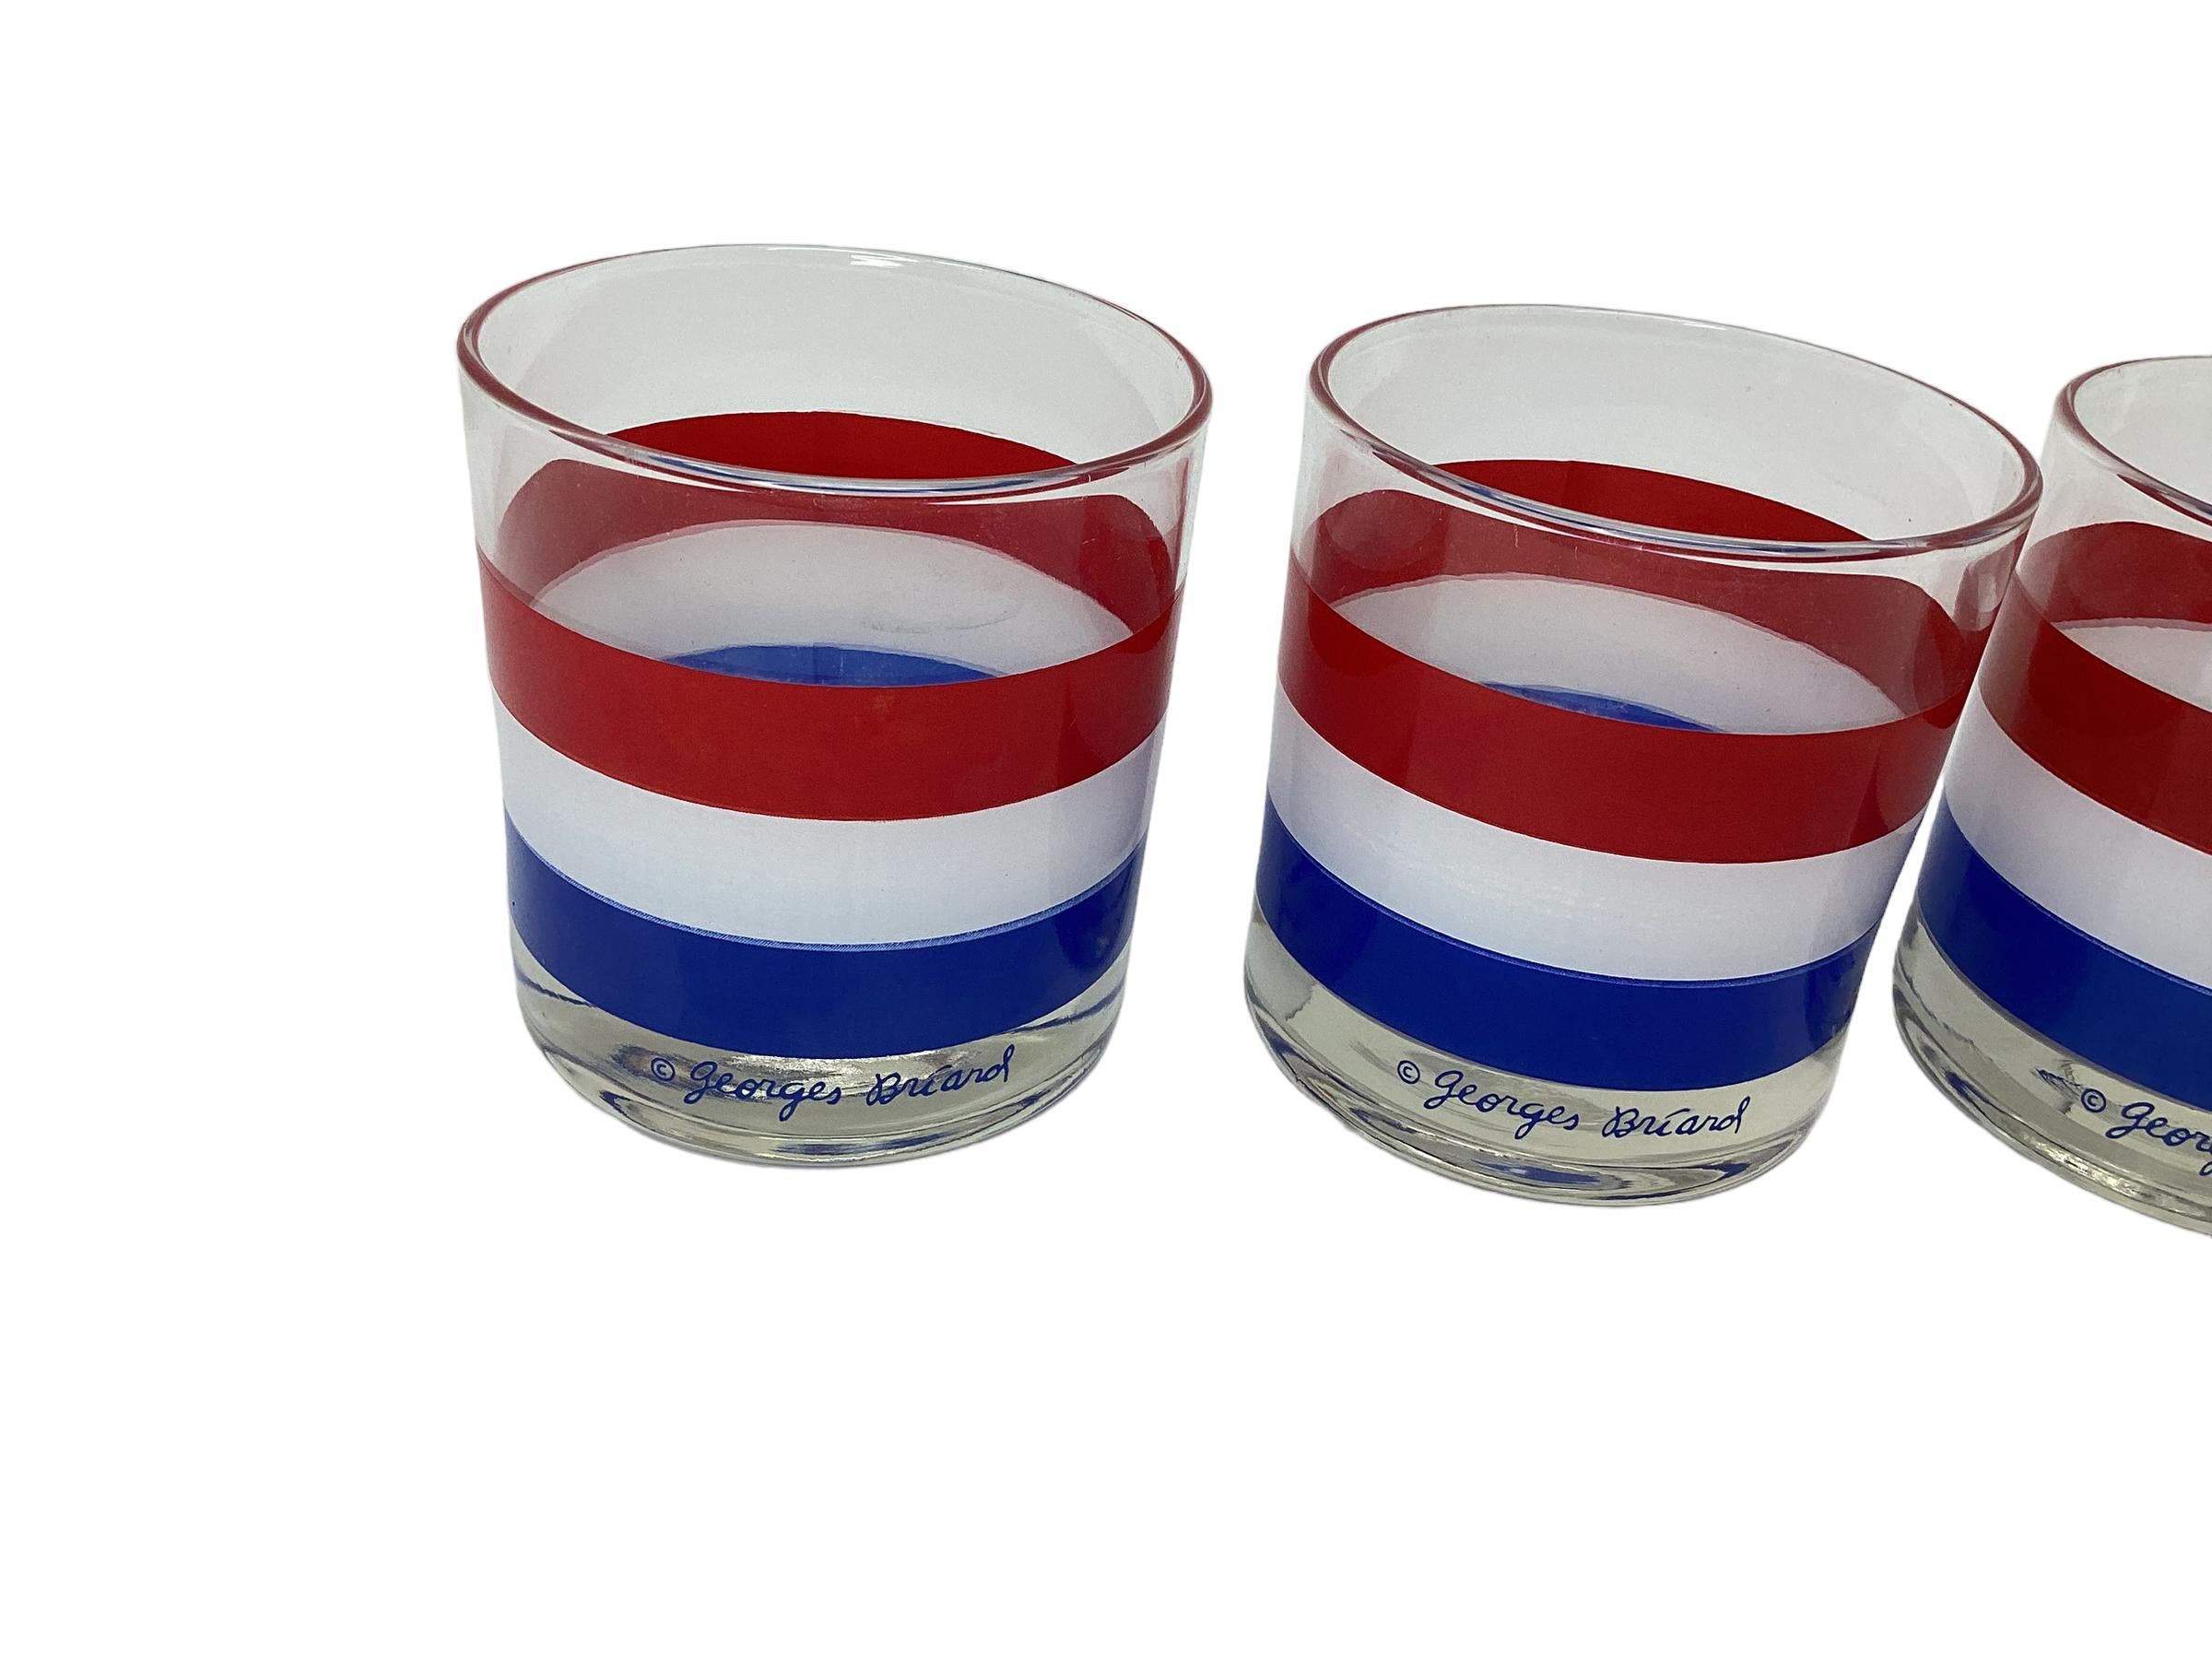 Ensemble de quatre verres à pied Vintage Georges Briard avec des bandes rouges, blanches et bleues.
Deux séries sont disponibles.